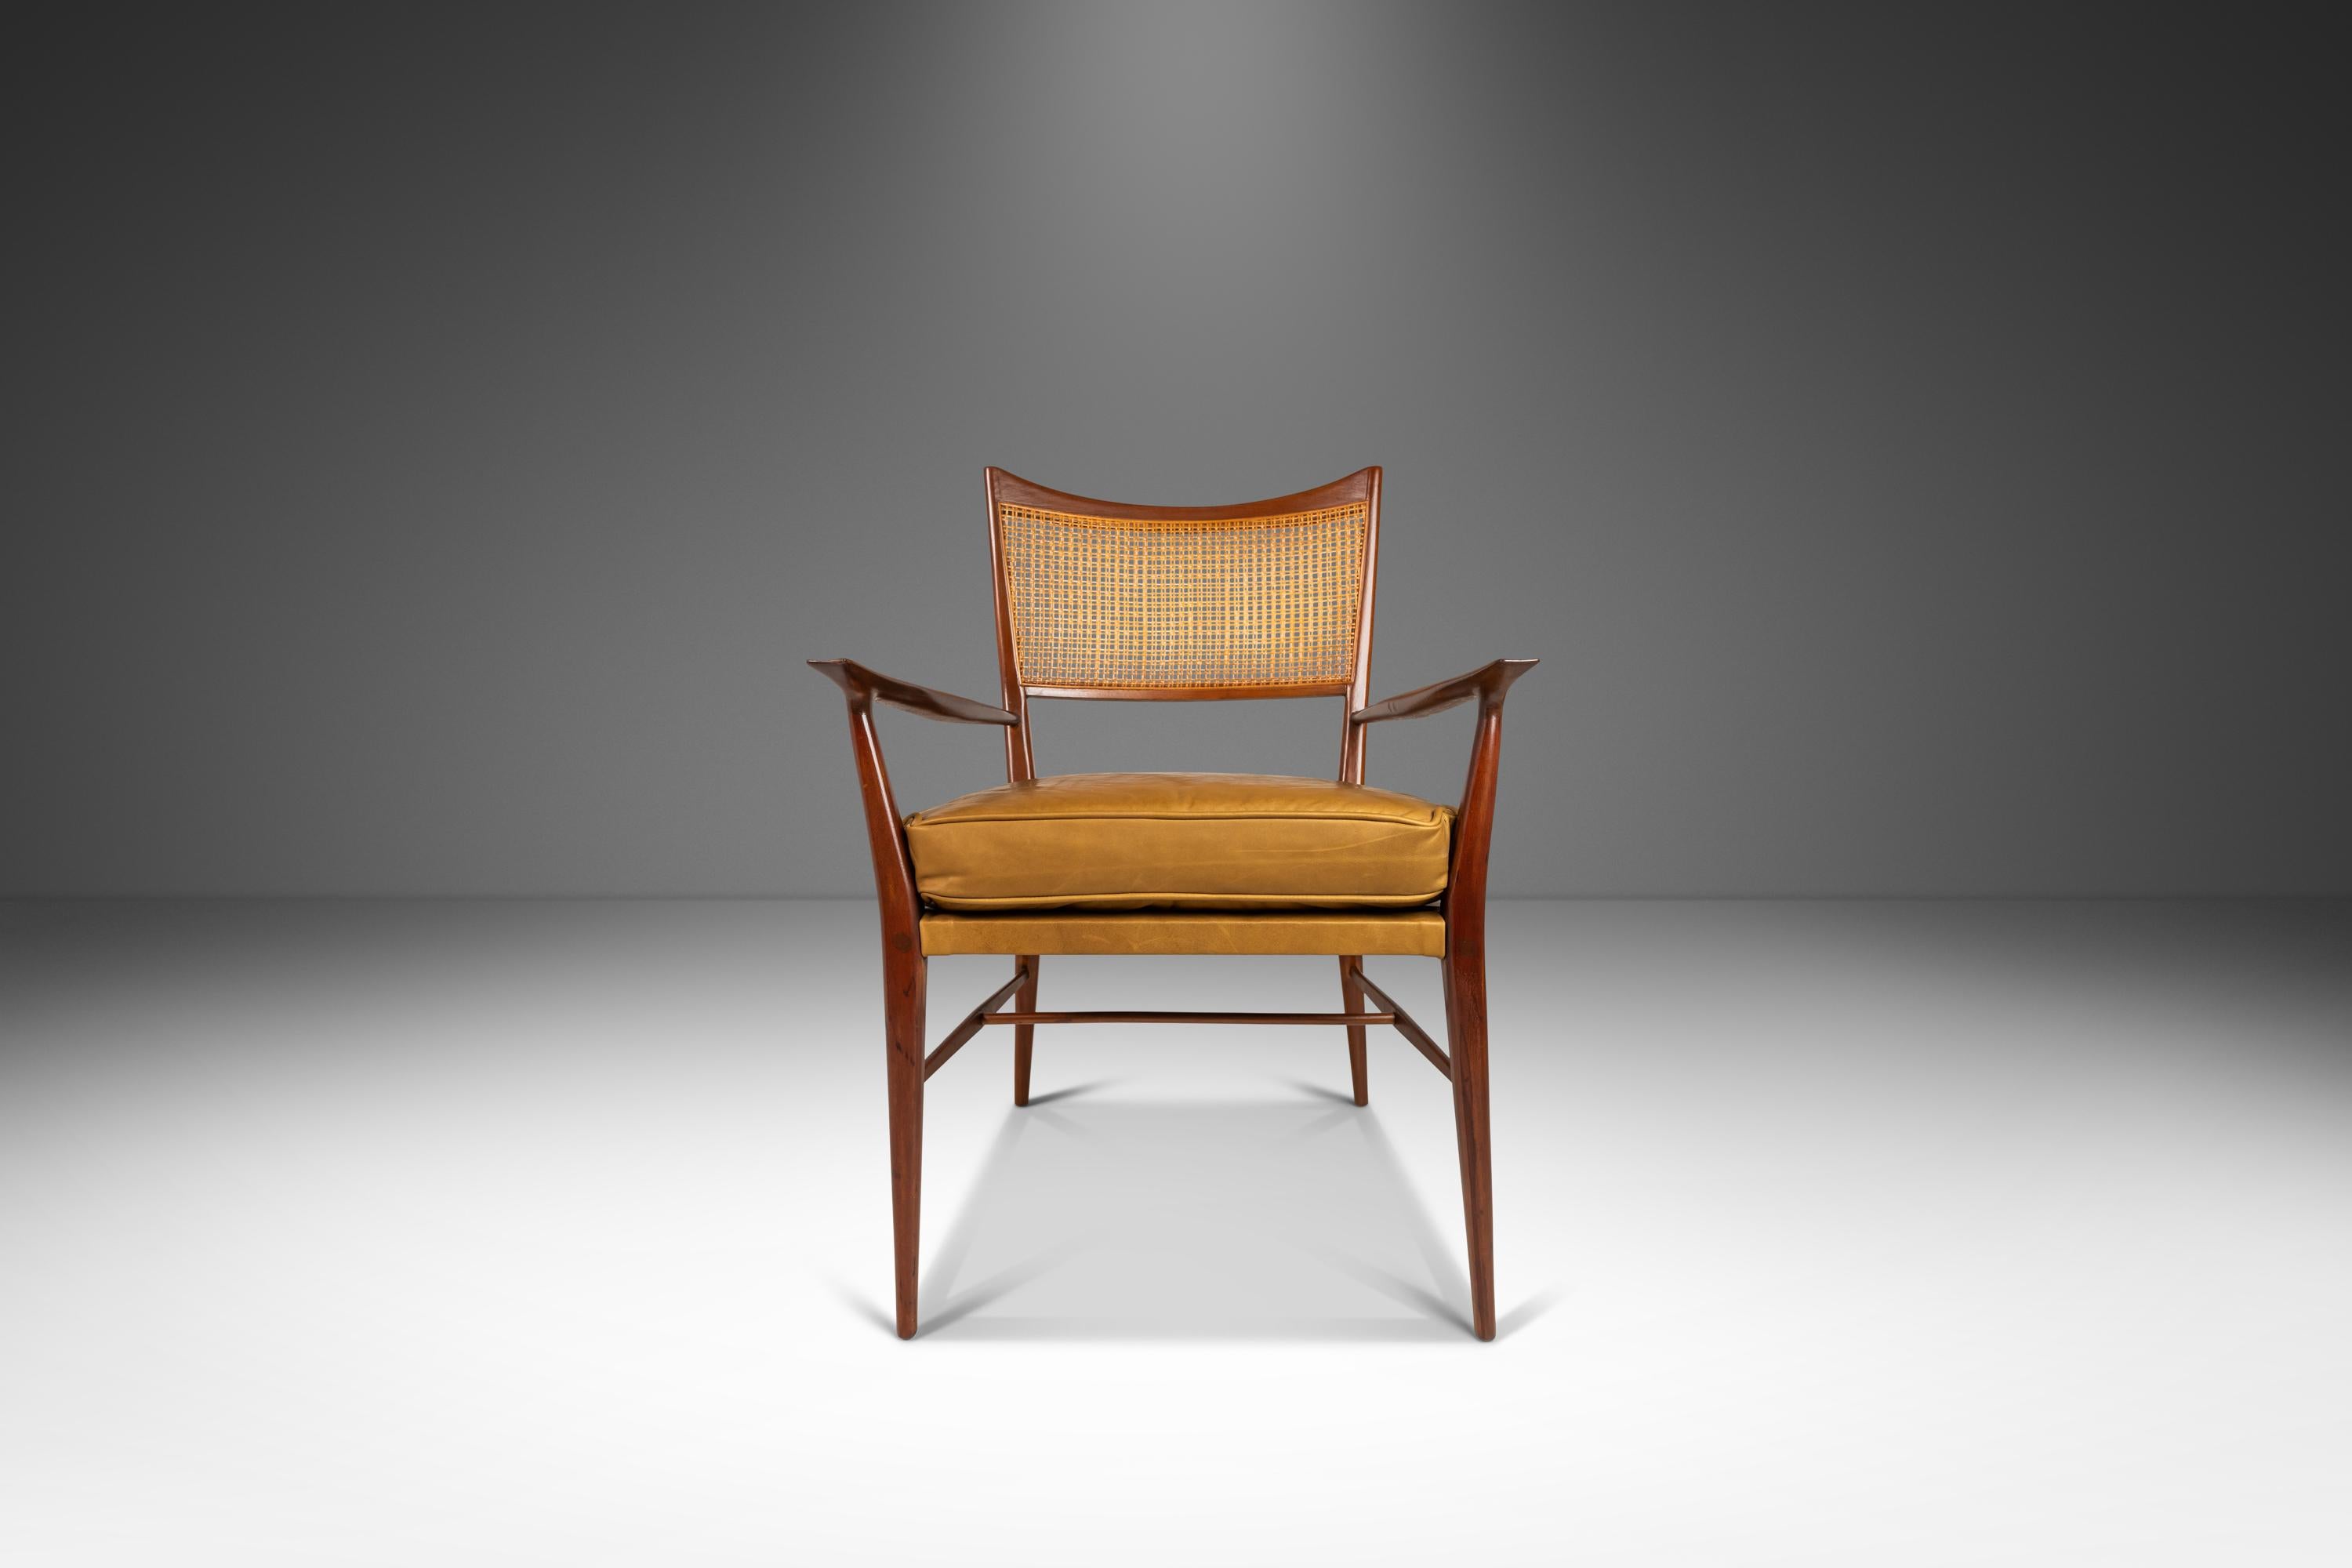 Voici une pièce unique et luxueuse d'un authentique mobilier du XXe siècle - un rare fauteuil modèle 7009 conçu par Paul McCobb pour Directional Furniture. Cette chaise est une véritable œuvre d'art et un must pour tout collectionneur de design